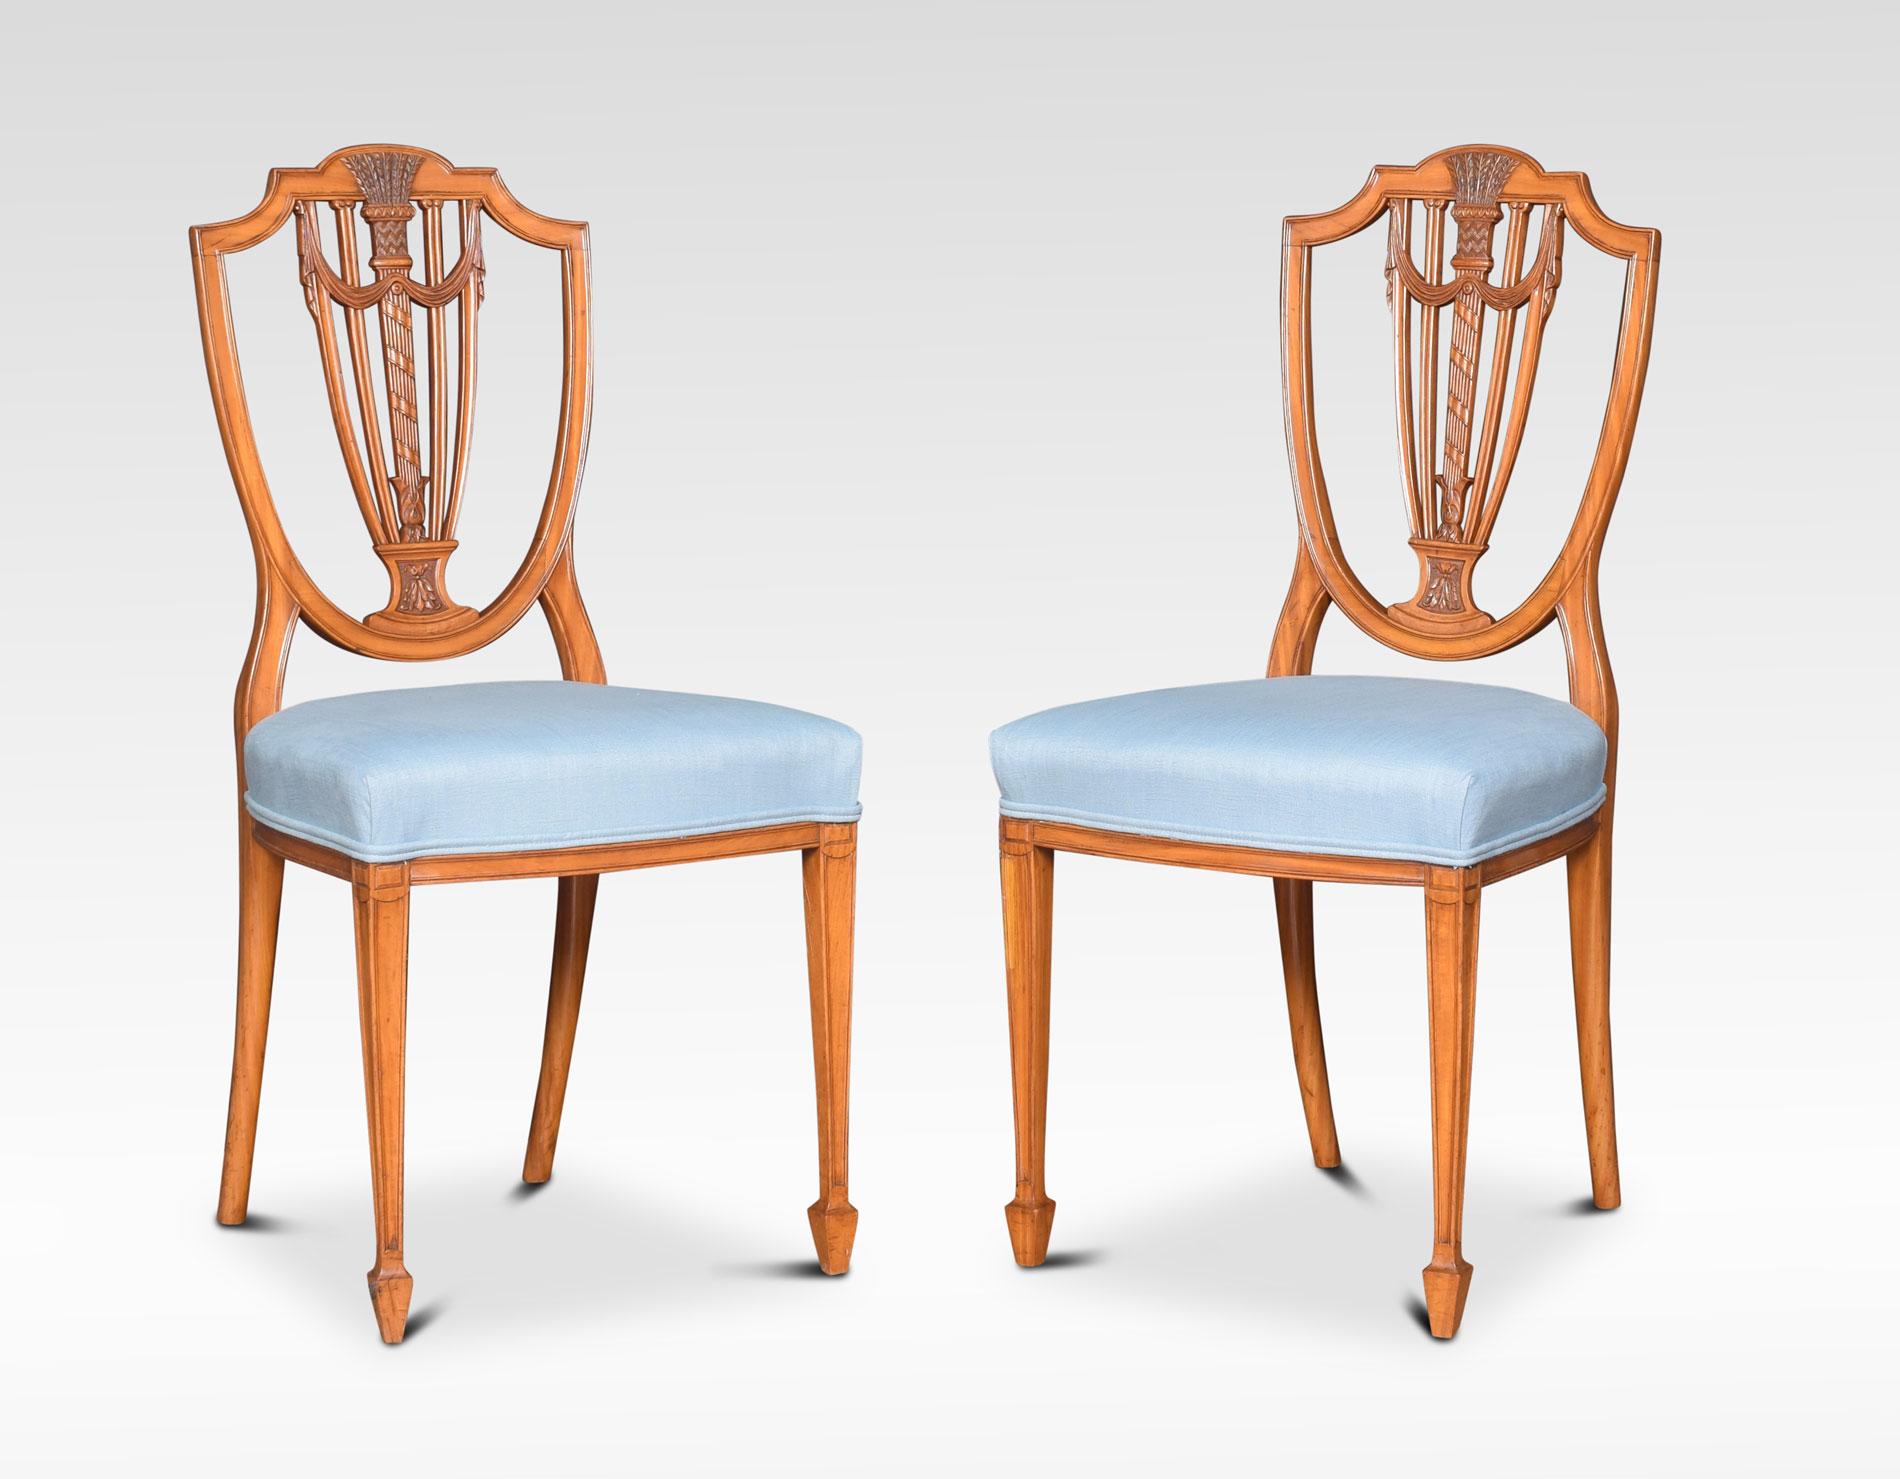 Satz von vier georgianischen Beistellstühlen aus satiniertem Holz, mit offener Rückenlehne und durchbrochener Leiste. Der übergepolsterte Sitz steht auf quadratischen, spitz zulaufenden Beinen, die in Spatenfüßen enden.
Abmessungen:
Höhe 37 Zoll